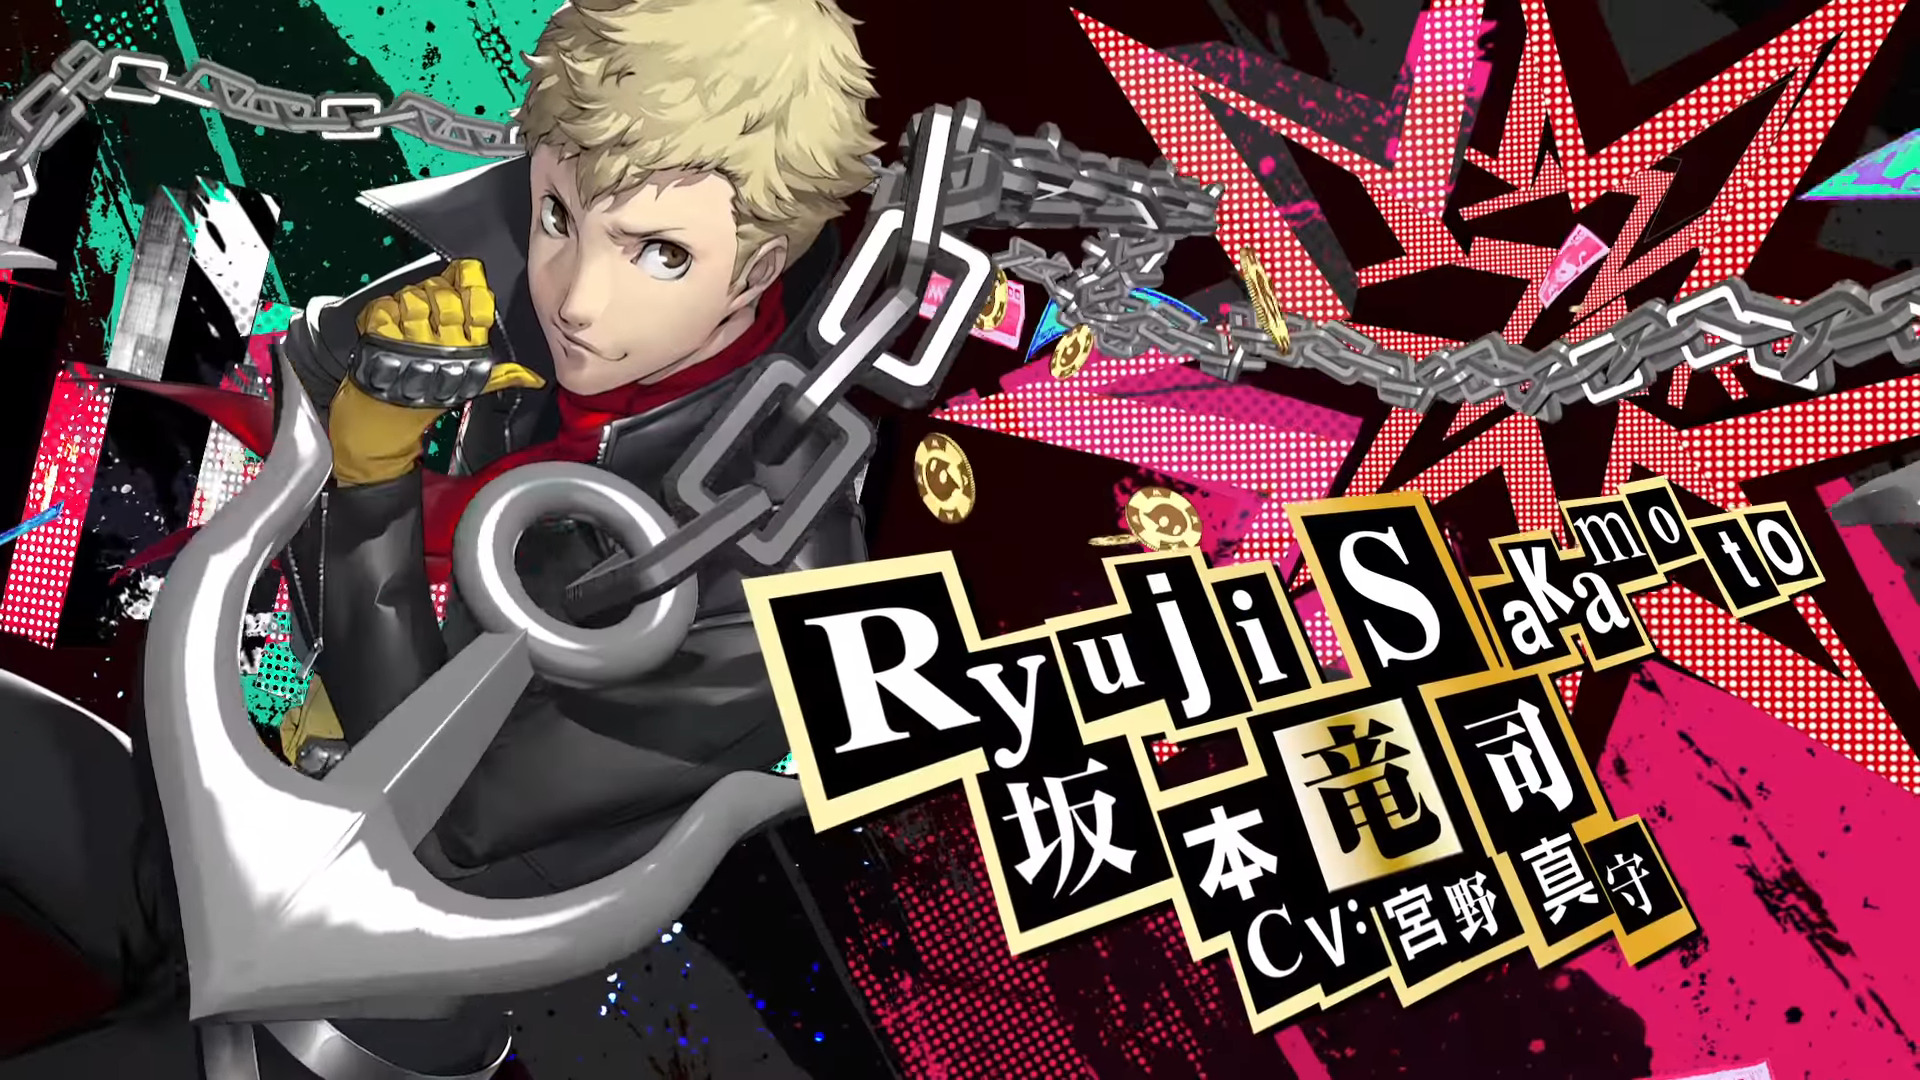 Persona 5 Royal Trailer Focuses On Ryuji Rpgamer